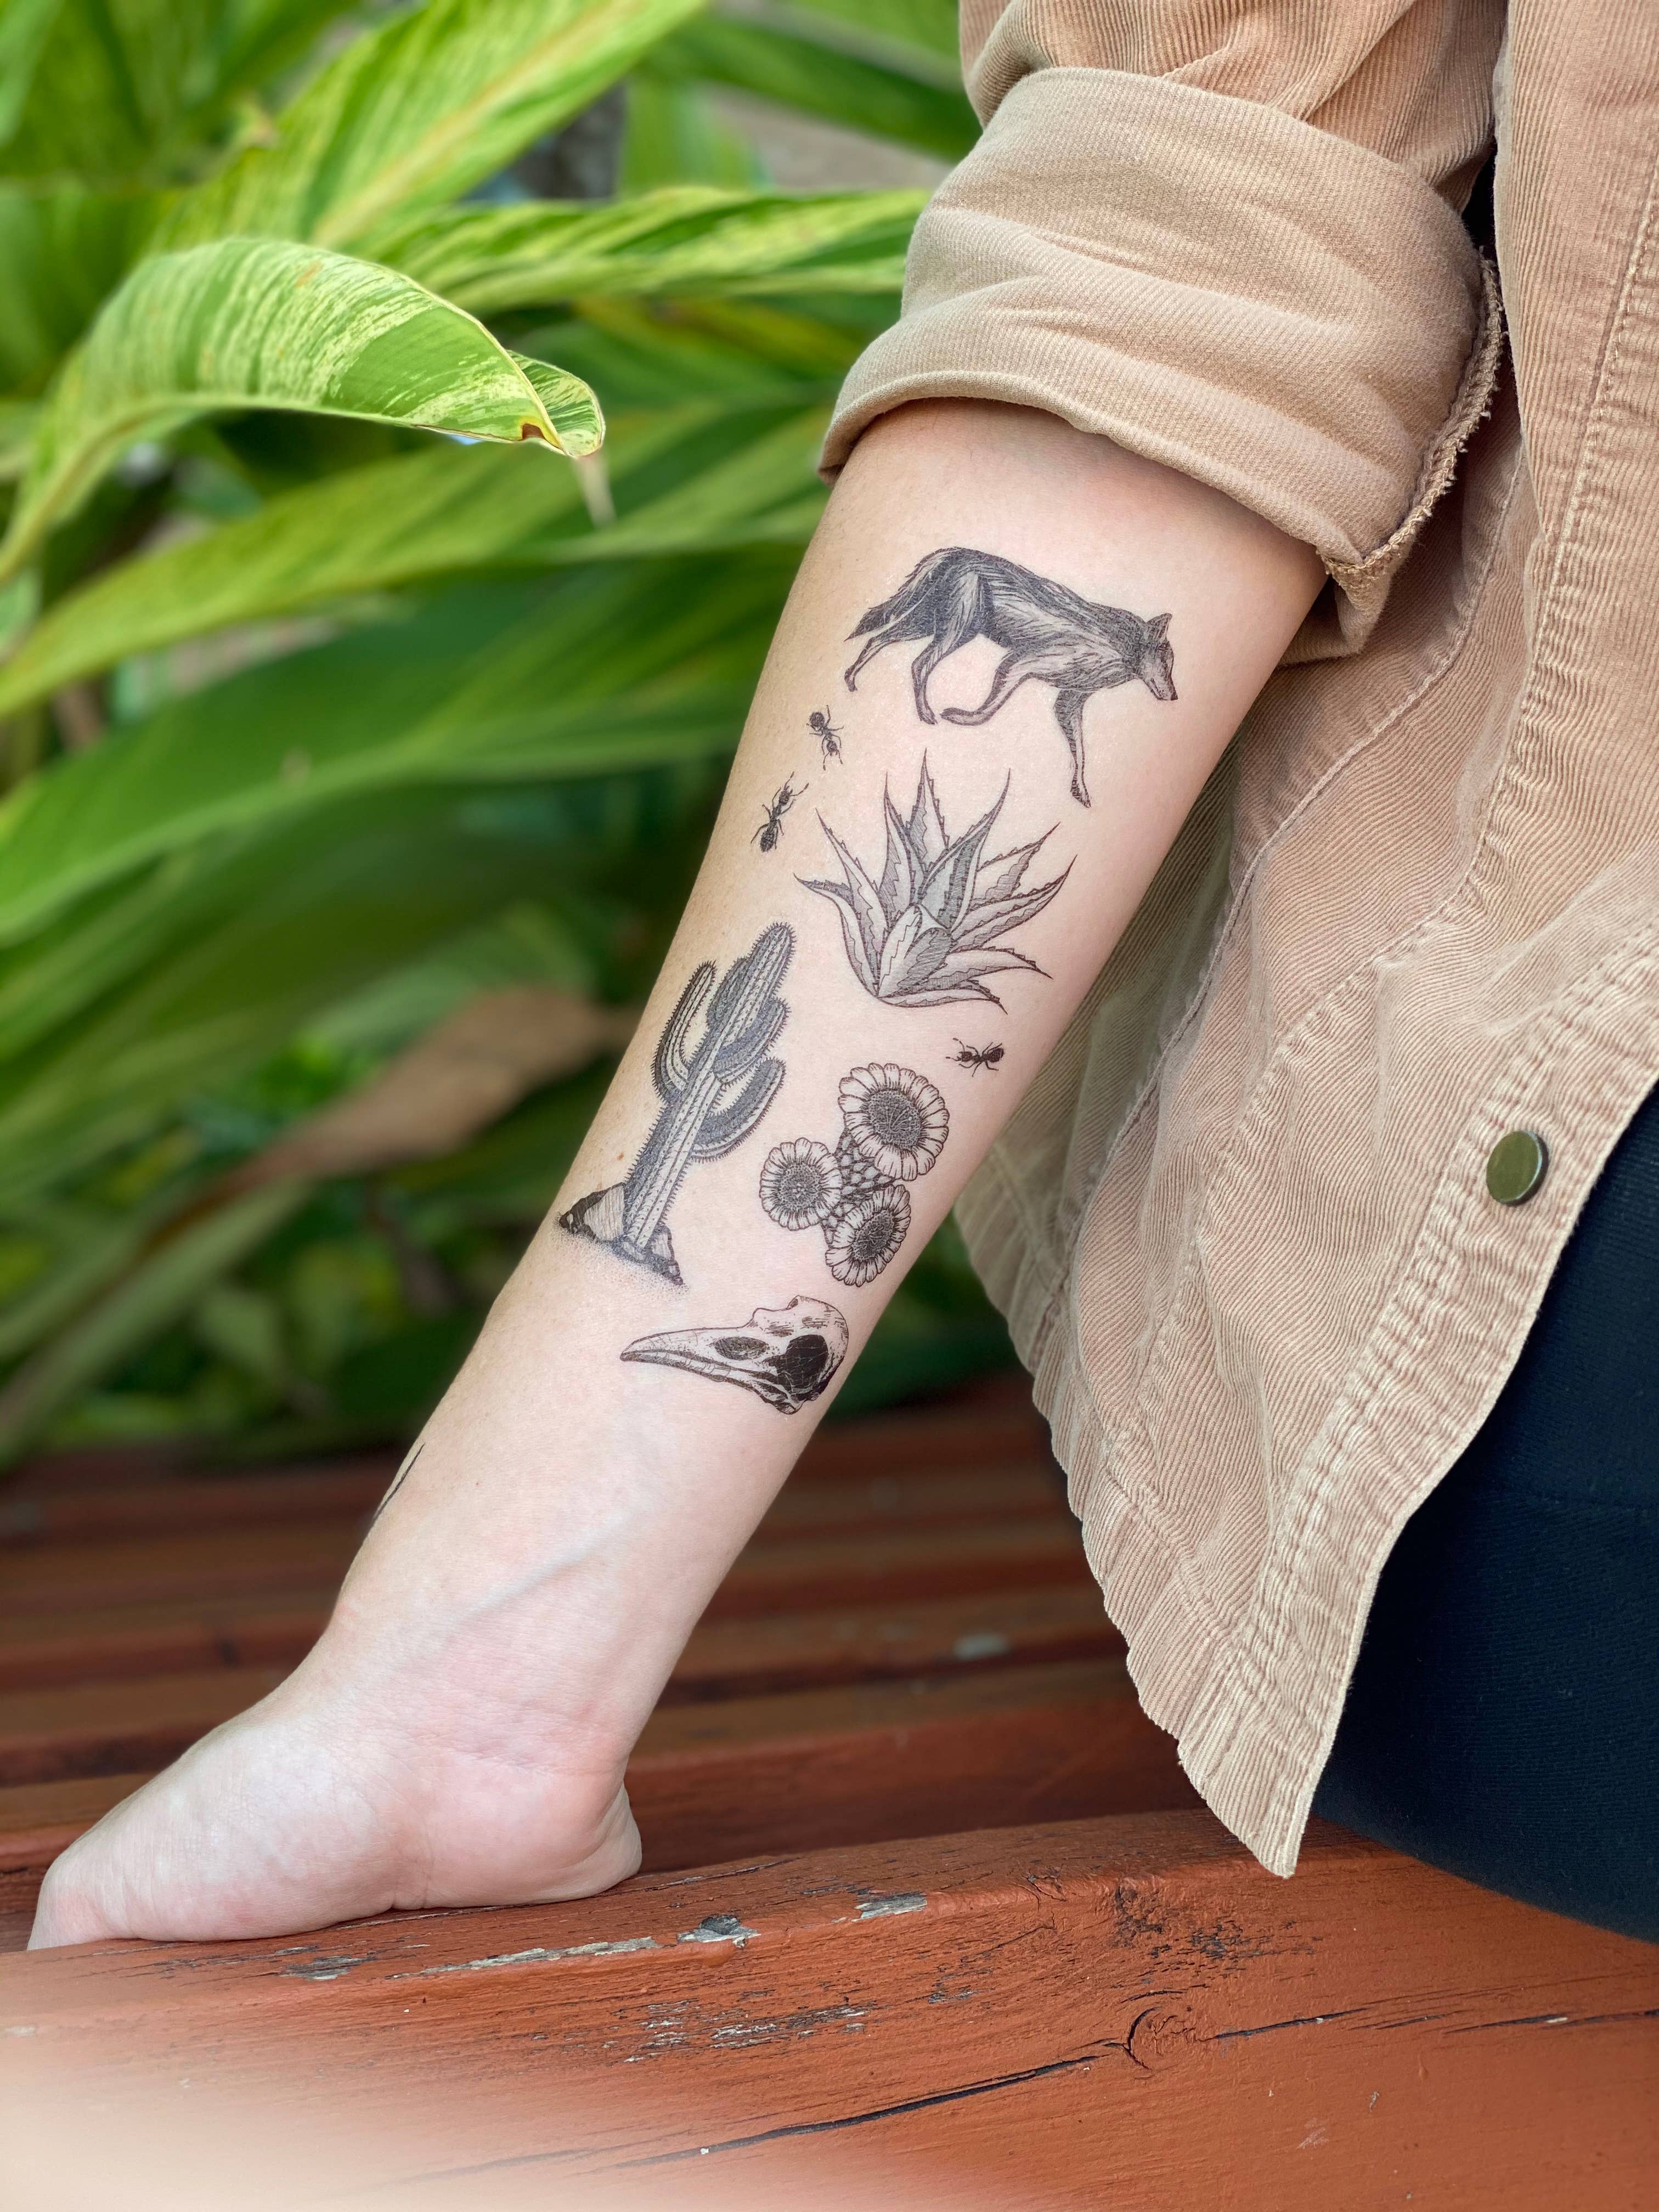 Desert tattoo | Desert tattoo, Tattoos, Simplistic tattoos